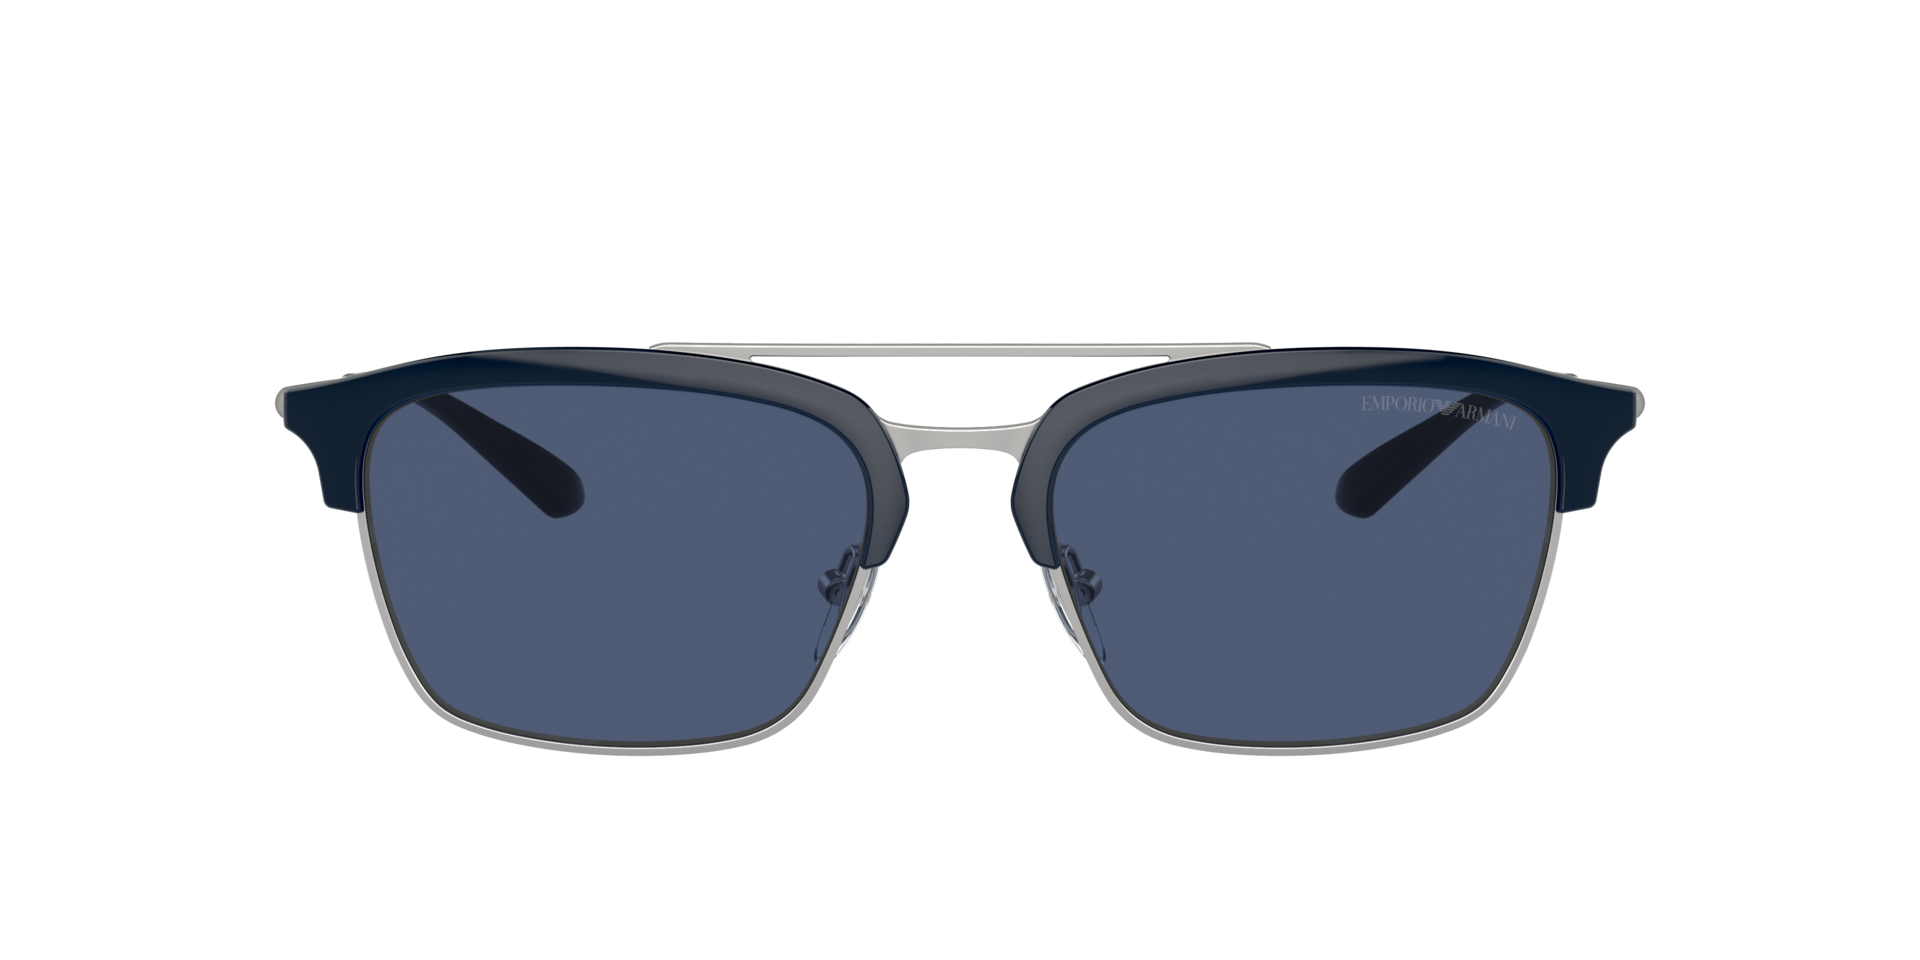 Das Bild zeigt die Sonnenbrille EA4228 304580 von der Marke Emporio Armani in blau/silber.